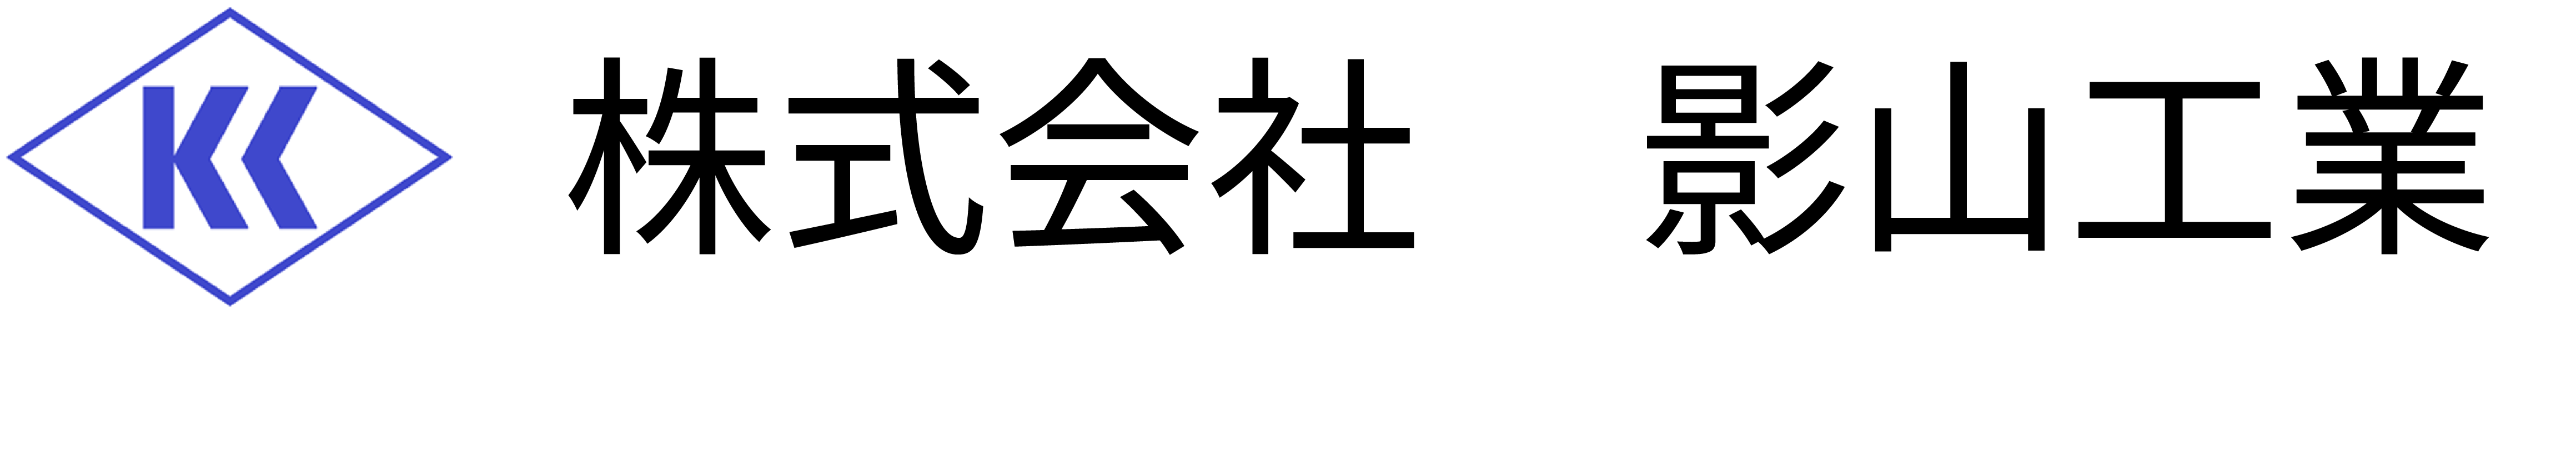 影山工業のロゴ